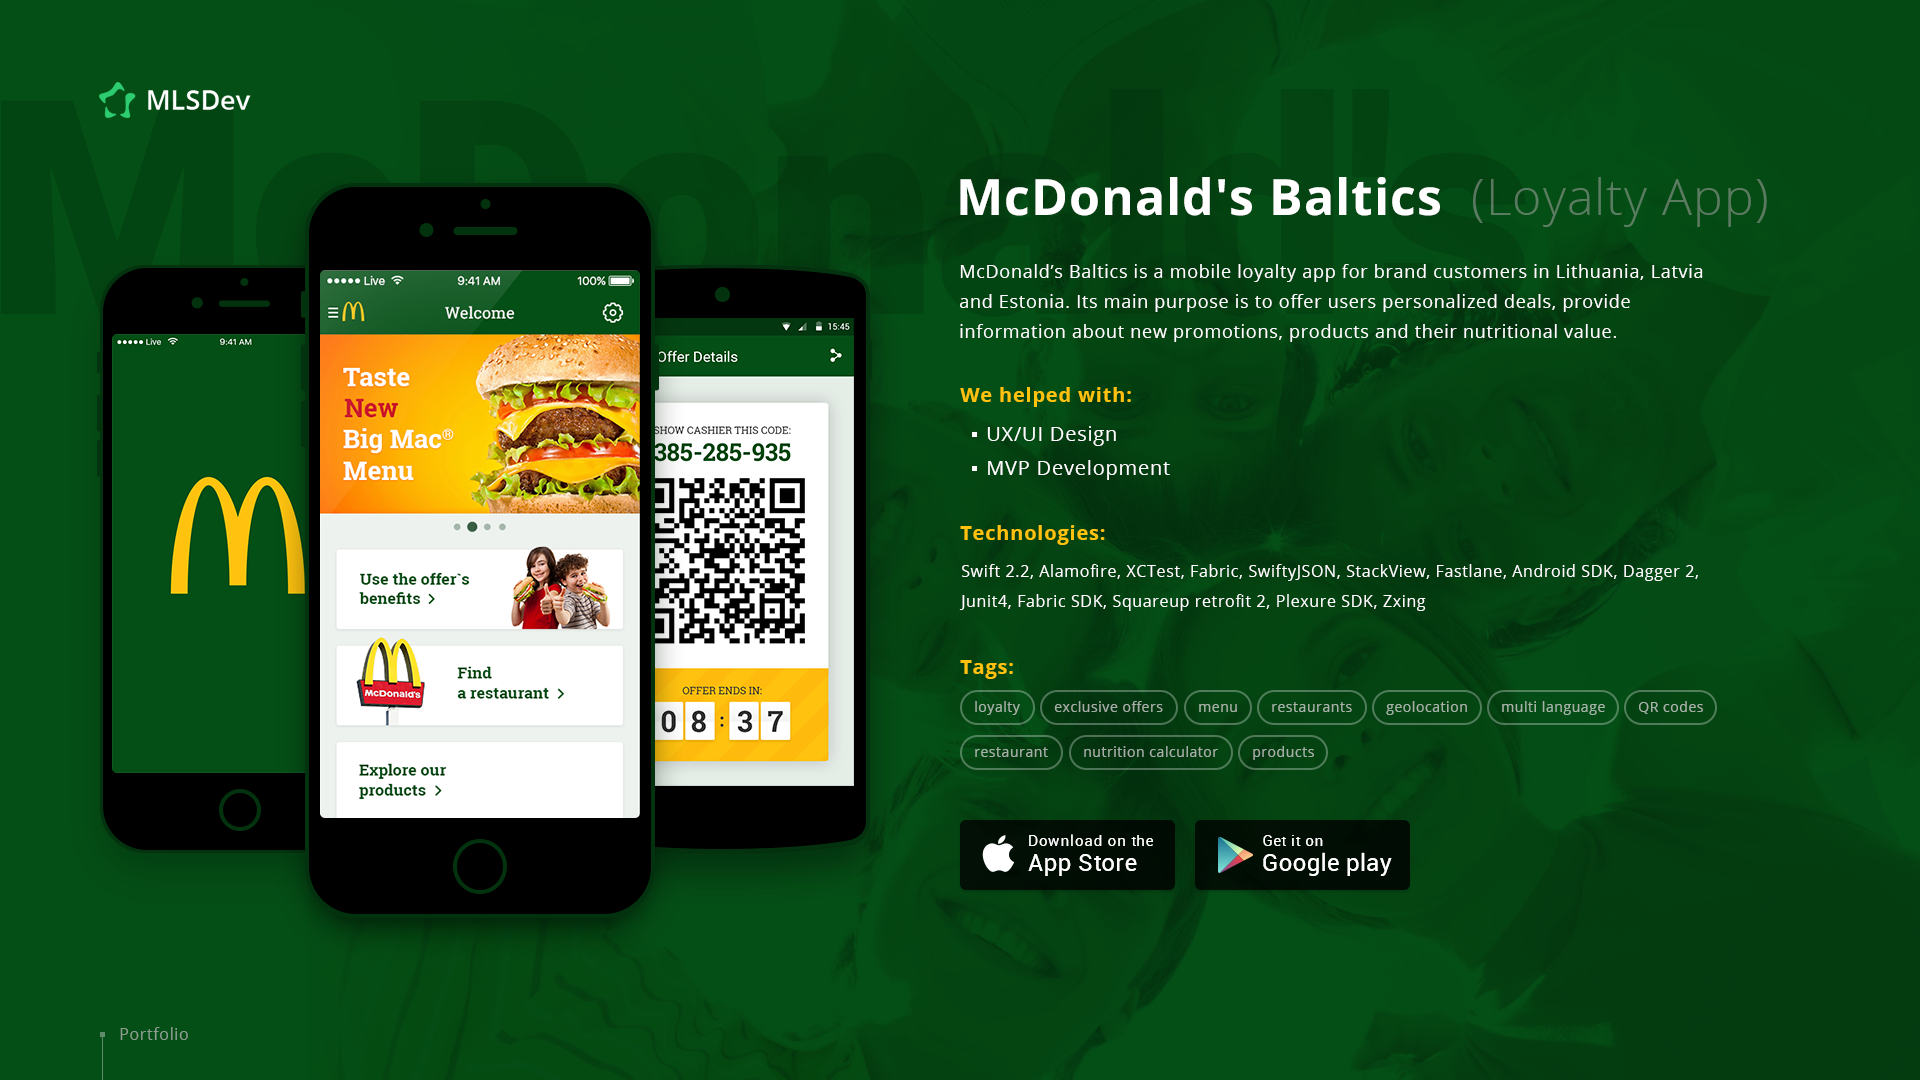 McDonald's Baltics